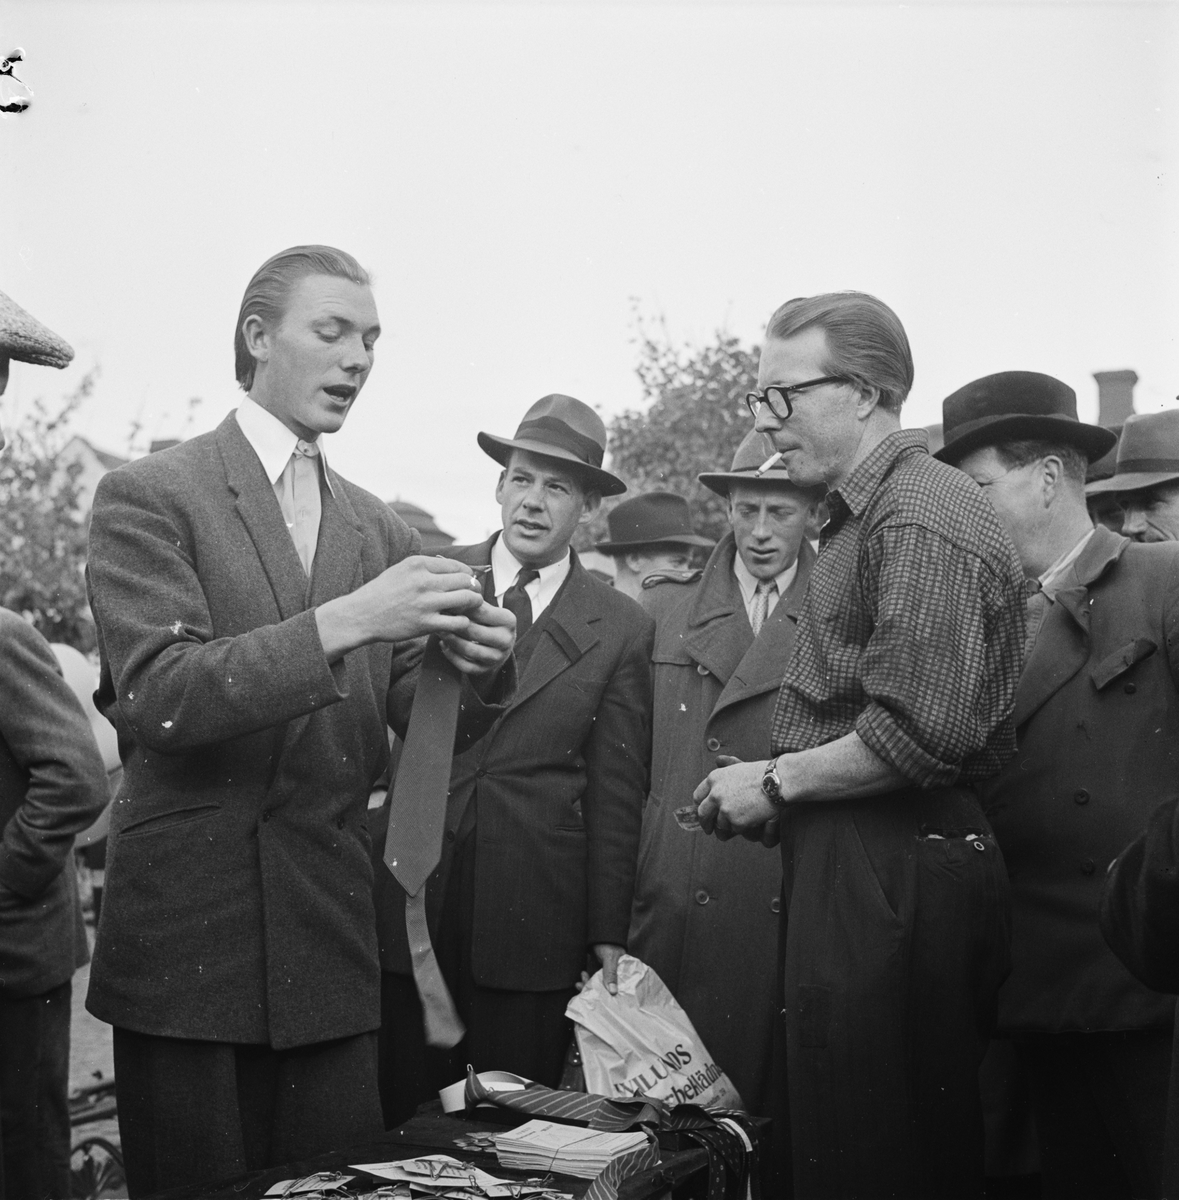 Höstmarknad på Vaksala torg, Uppsala 1948. Bertil Odin "demonsterar hur man behändigt knyter sin slips med hjälp av en ståltrådsställning".